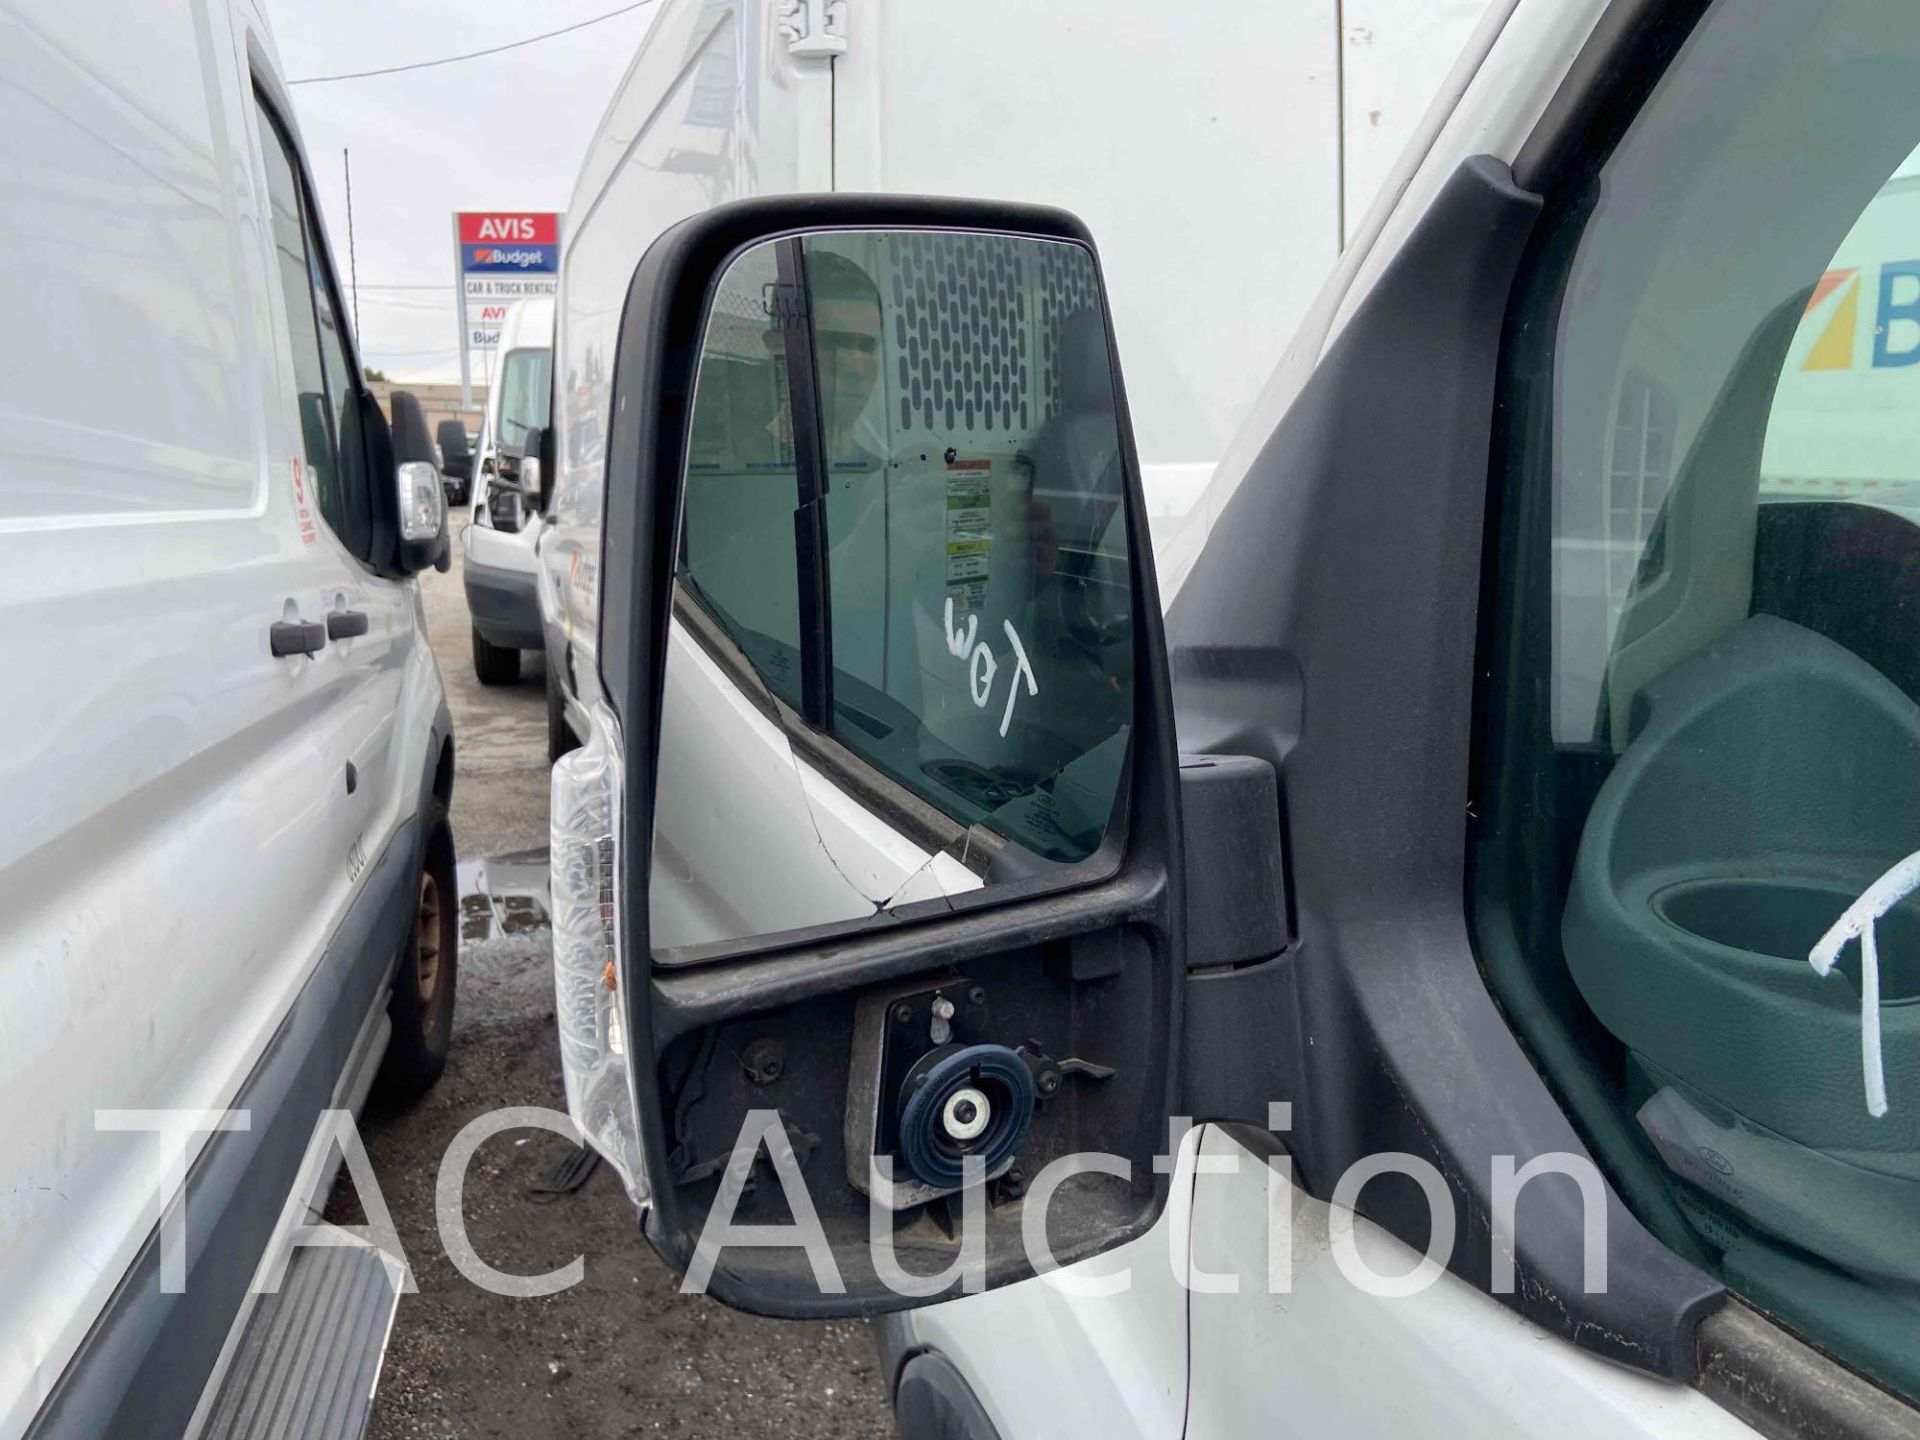 2019 Ford Transit 150 Cargo Van - Image 39 of 93